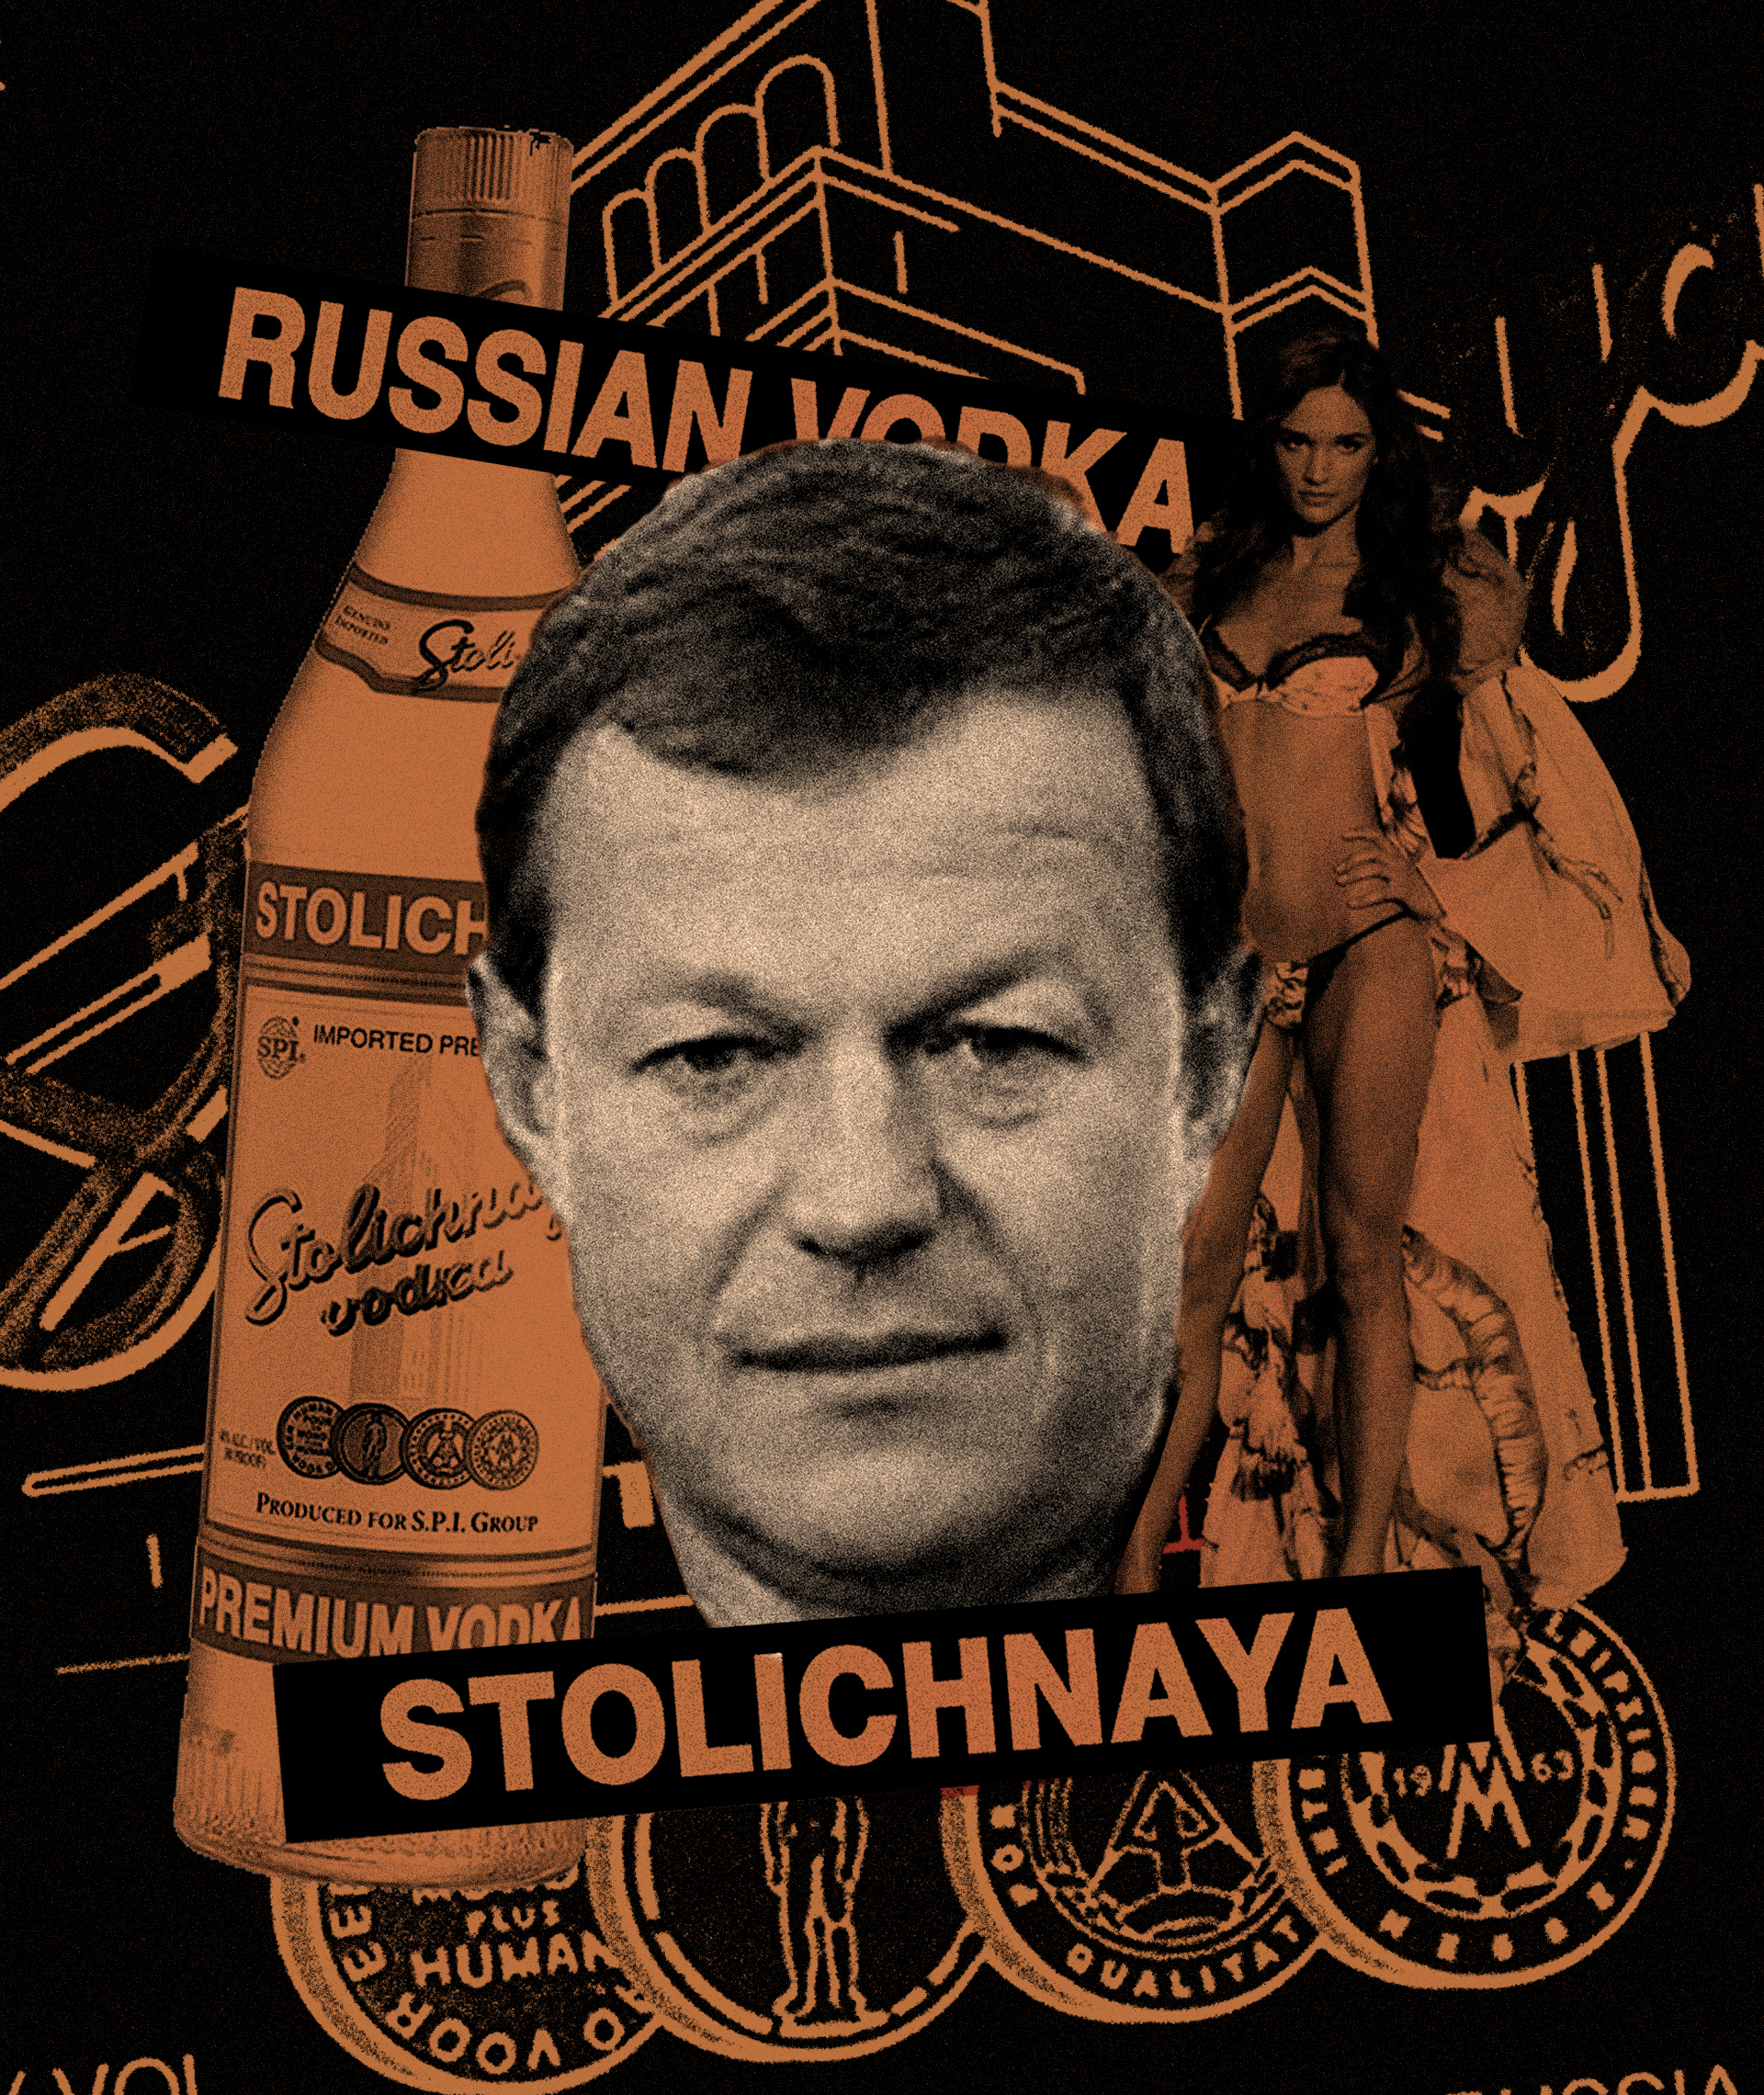 Fotocomposicin del multimillonario Yuri Shefler, su mujer y una botella de vodka Stolichnaya fabricado en Rusia.